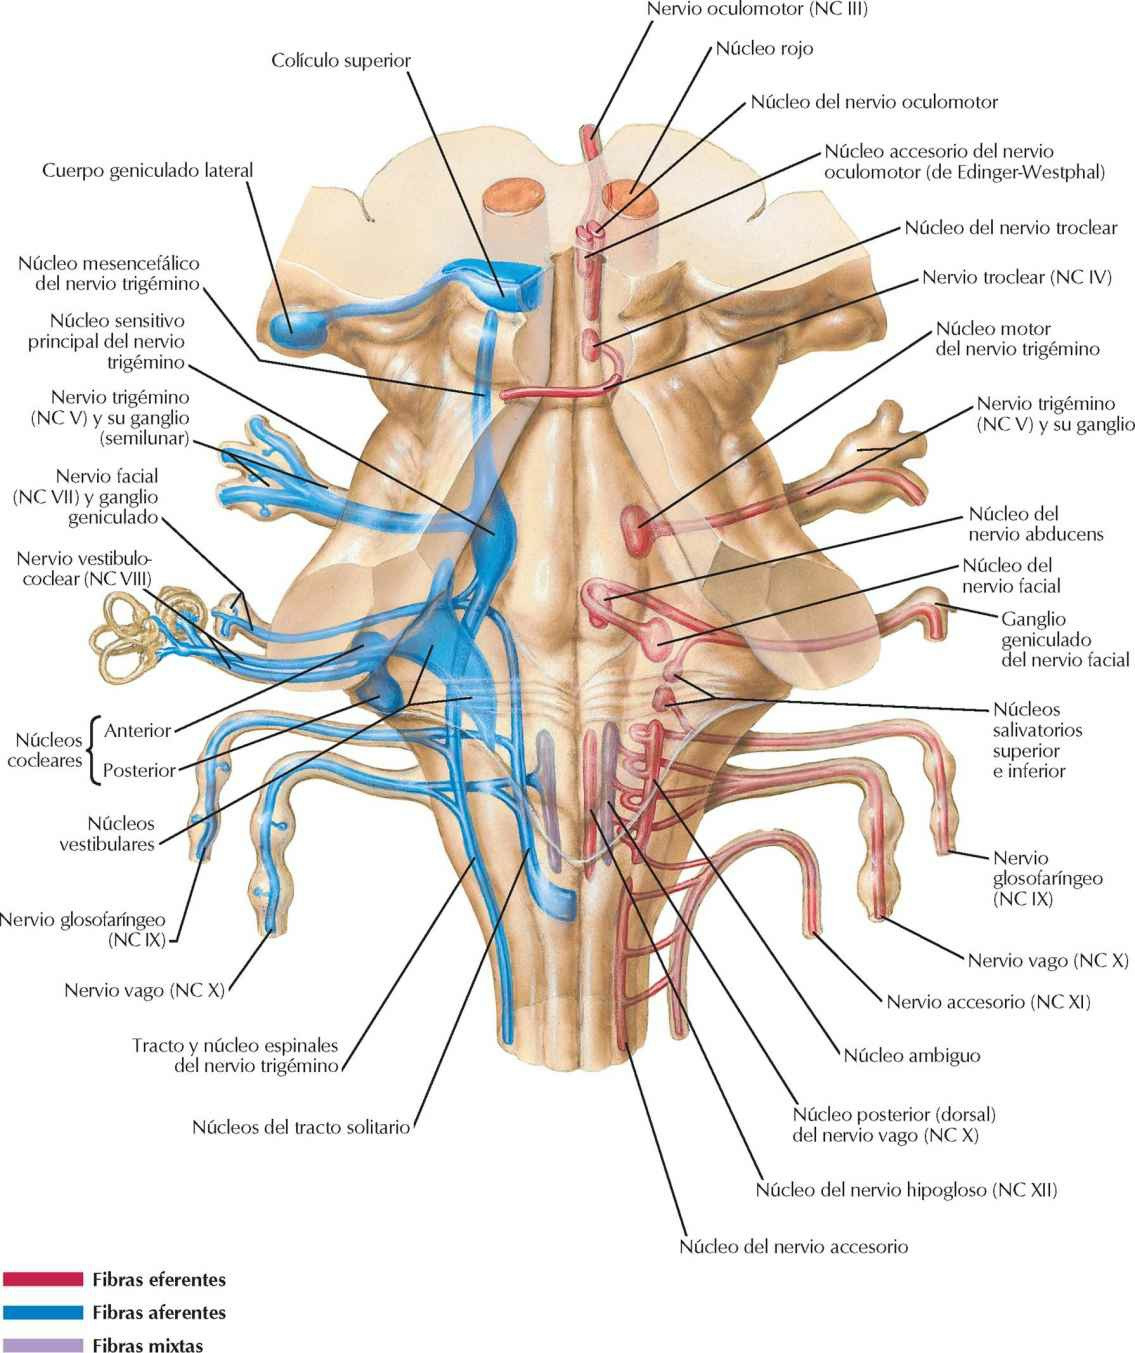 Núcleos de los nervios craneales en el
tronco del encéfalo: esquema.